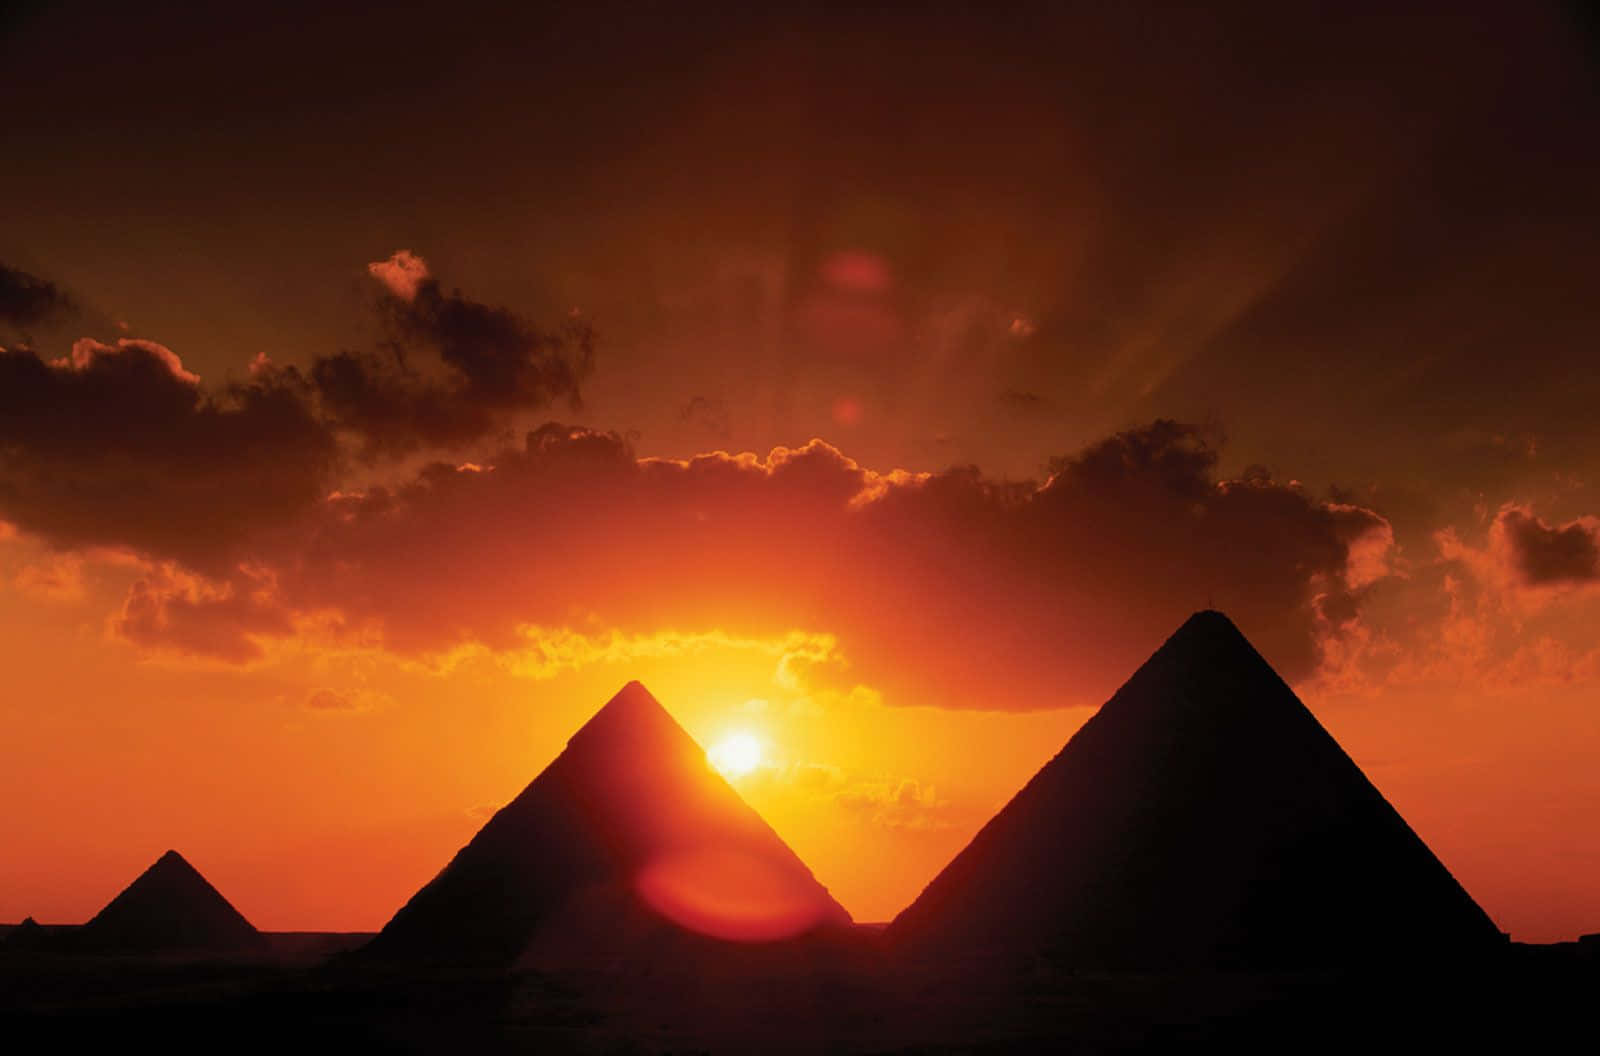 The Pyramids Of Giza Setting Sun Silhouette Wallpaper